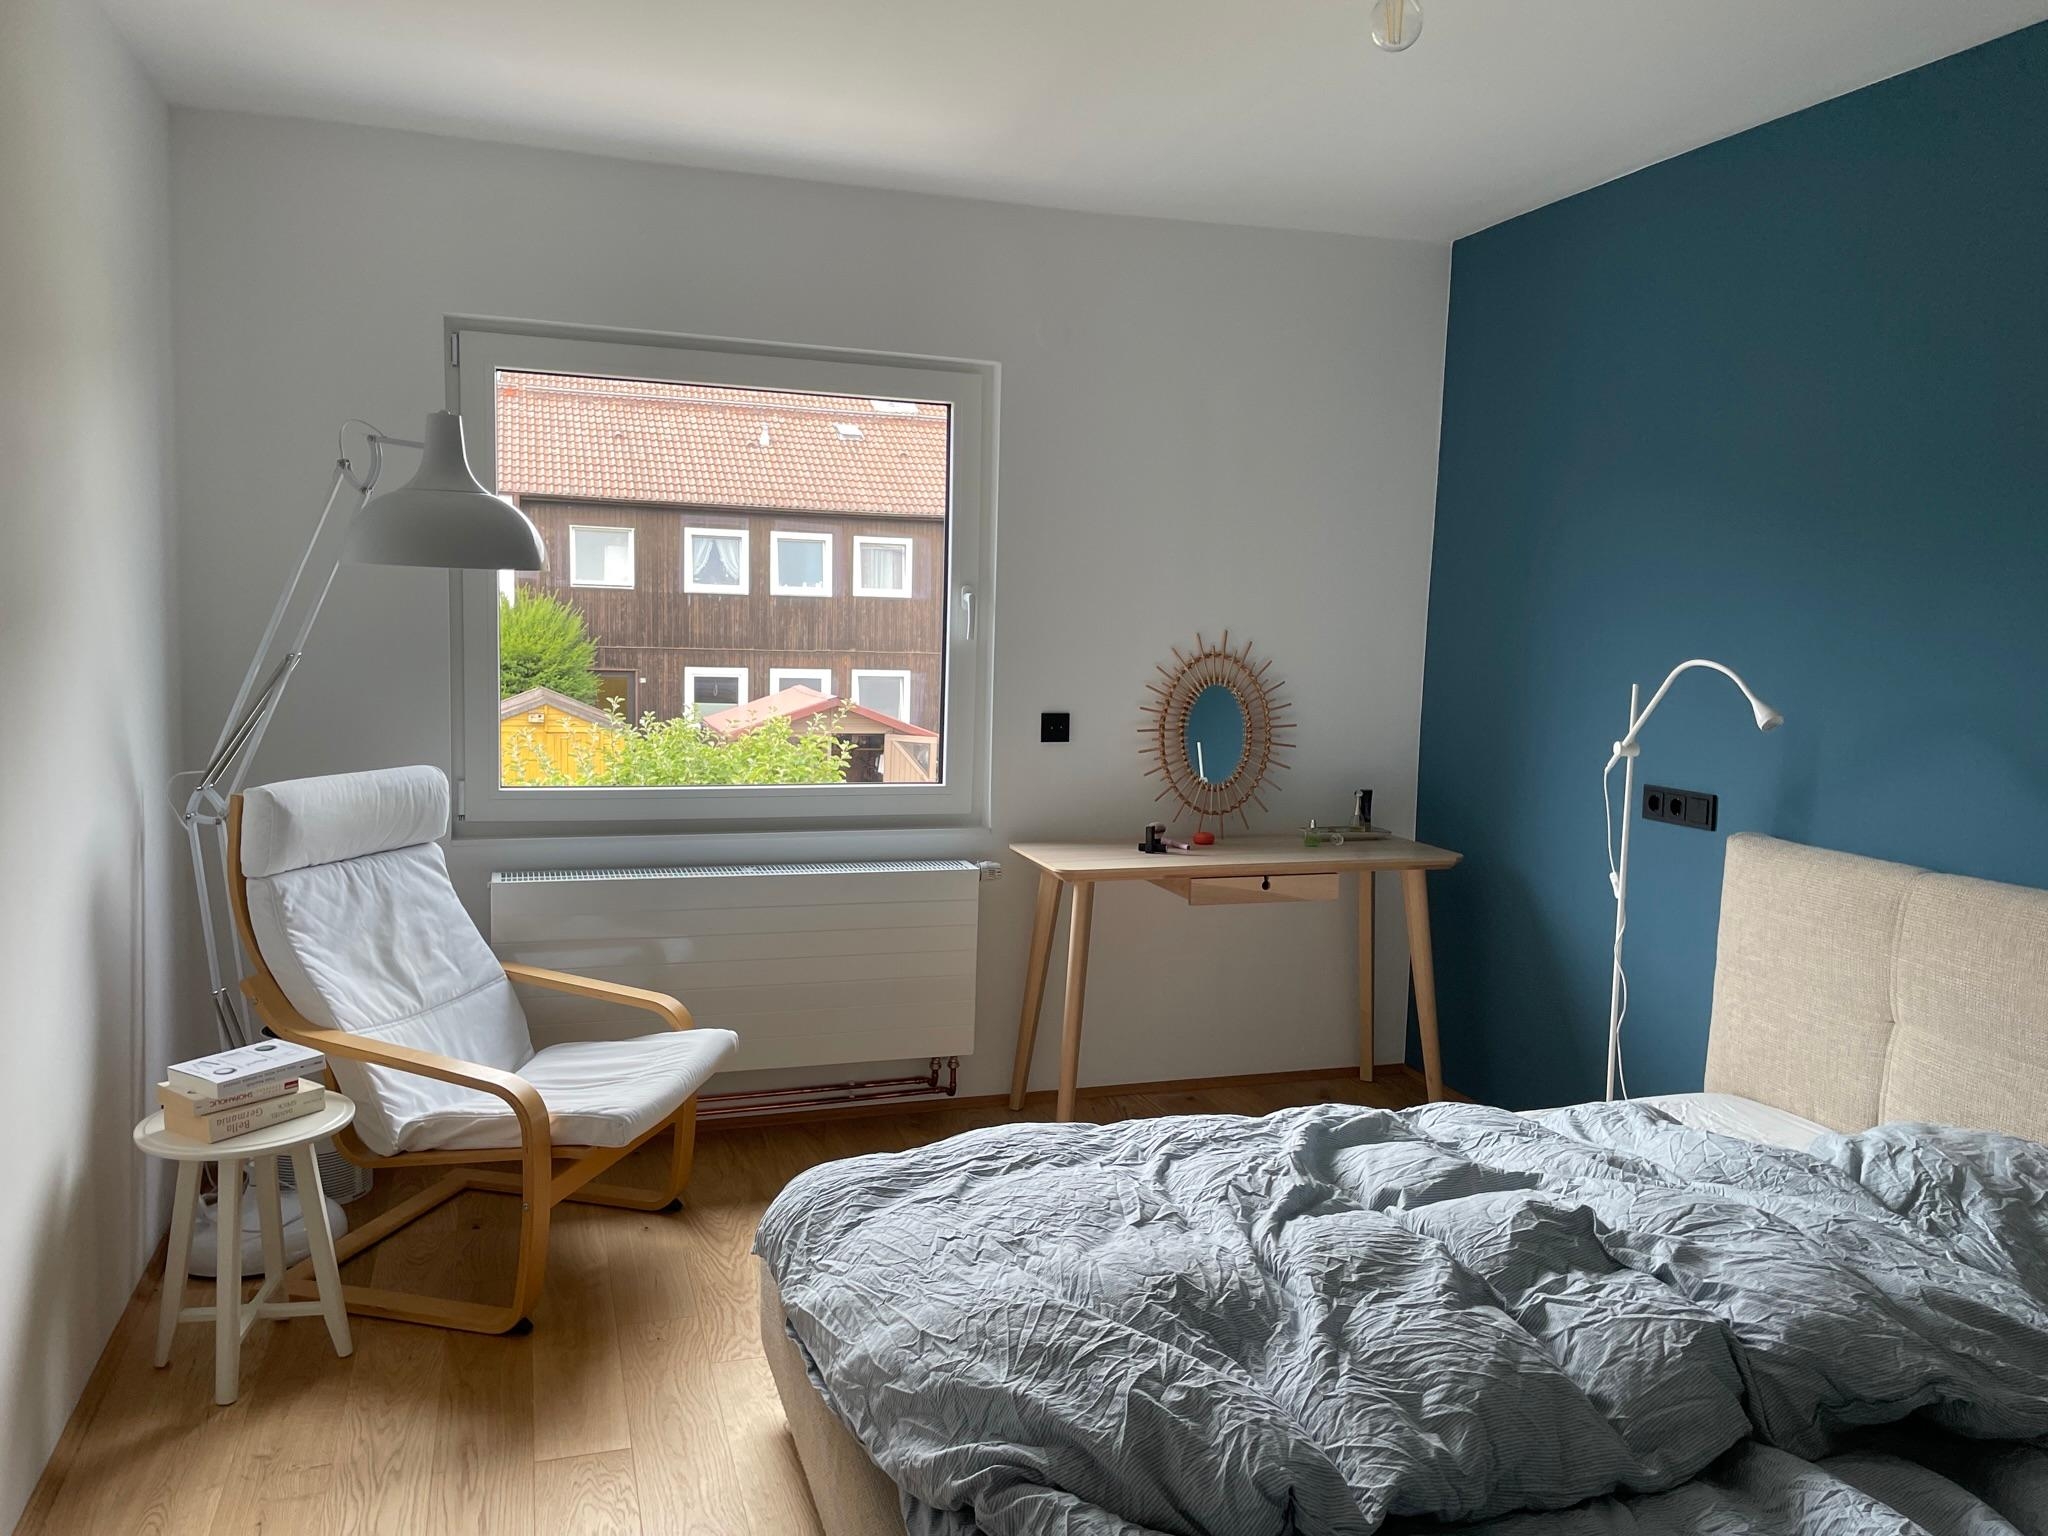 Heute mal ein Bild vom Schlafzimmer noch ohne Lampe. 
#bedroom #blauesschlafzimmer #blauewand #frisiertisch